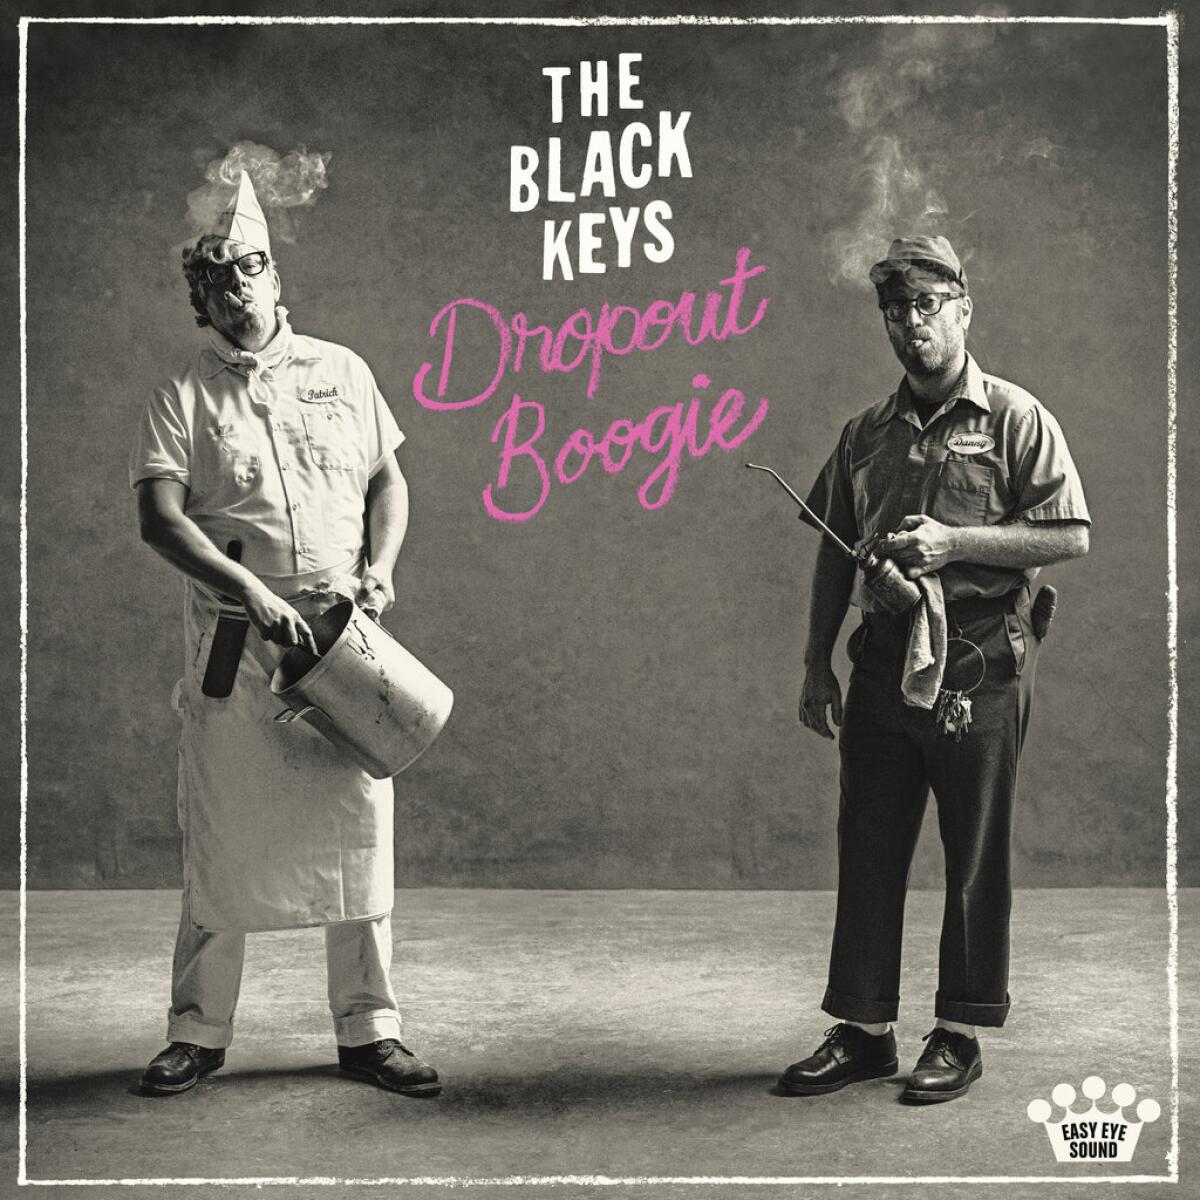  la portada del álbum "Dropout Boogie" de The Black Keys.